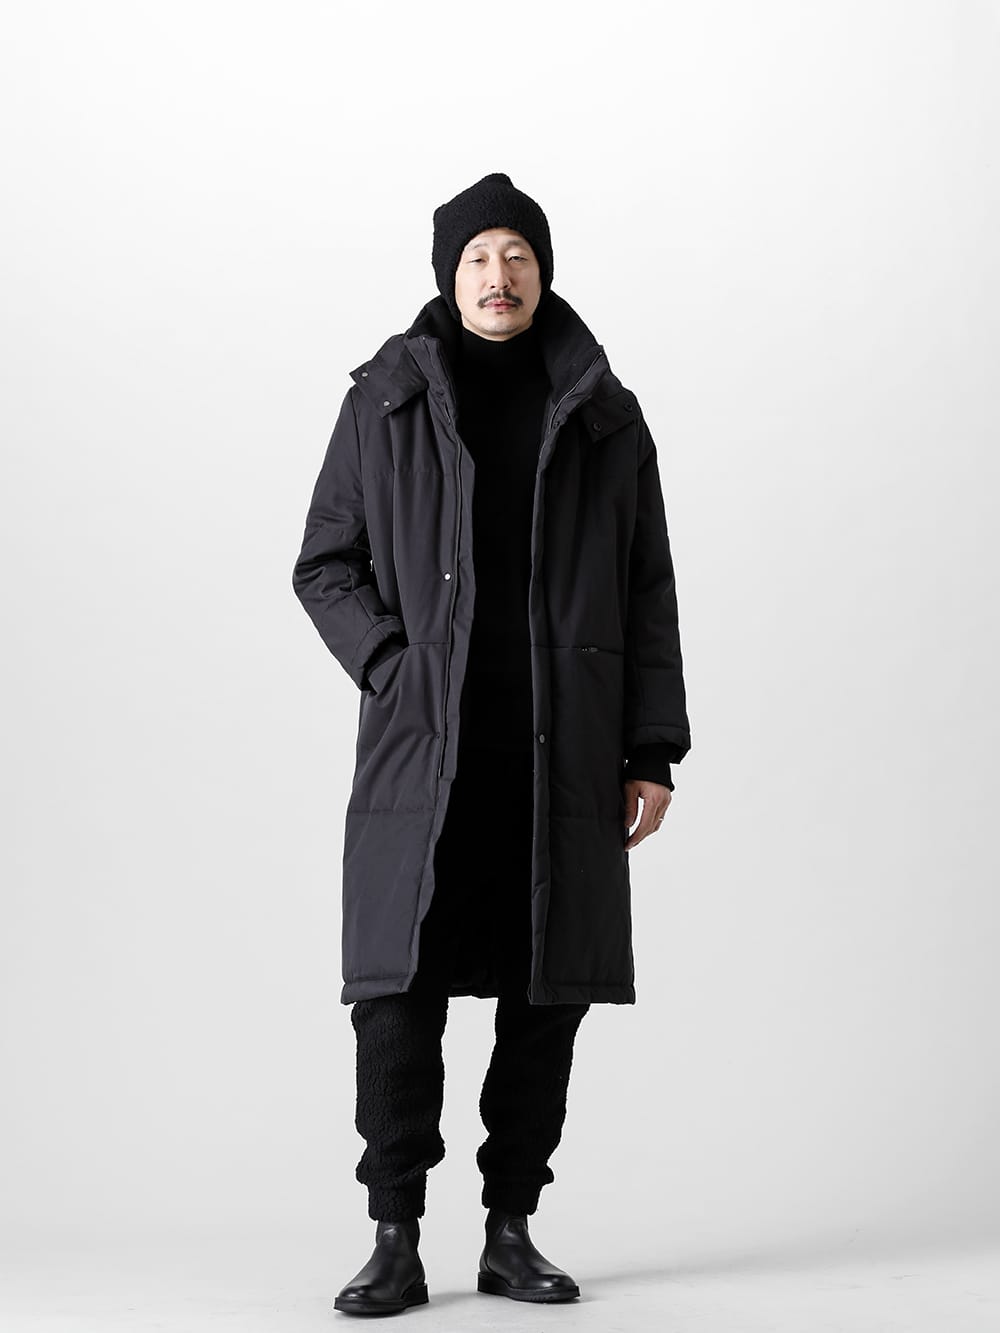 NOMEN NESCIO - ノーメンネスキオ 防寒性確かなコートを柔らかなふわふわとしたビジュアルが特徴のニットパンツで合わせました1 - 全身